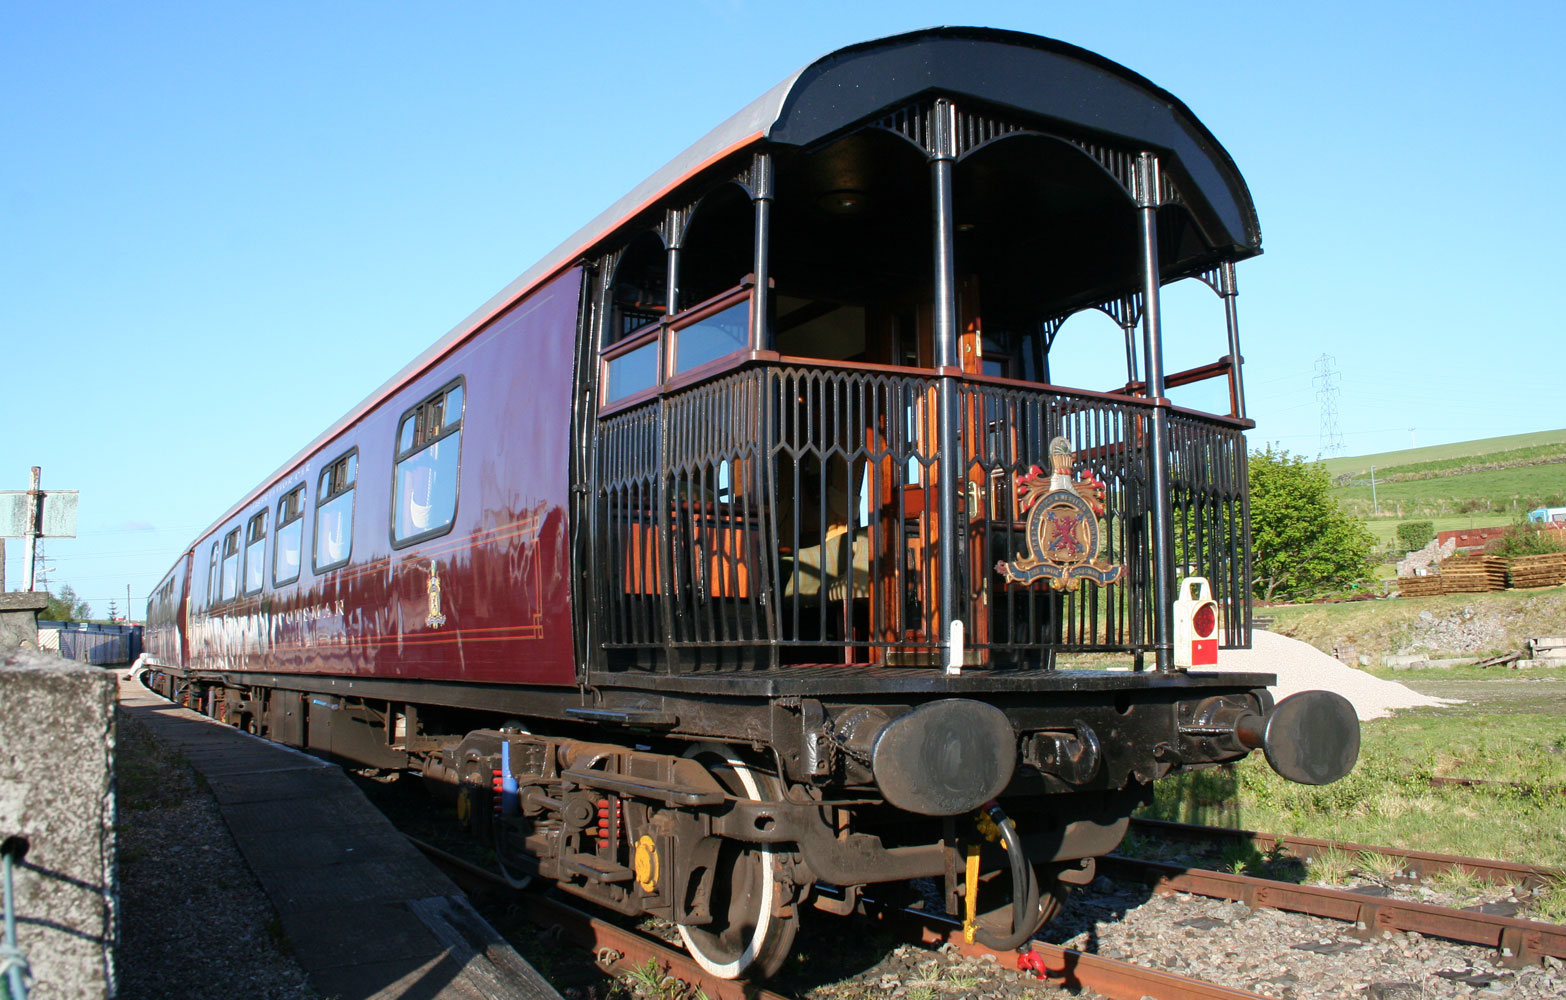 Royal Scotsman, A Belmond Train